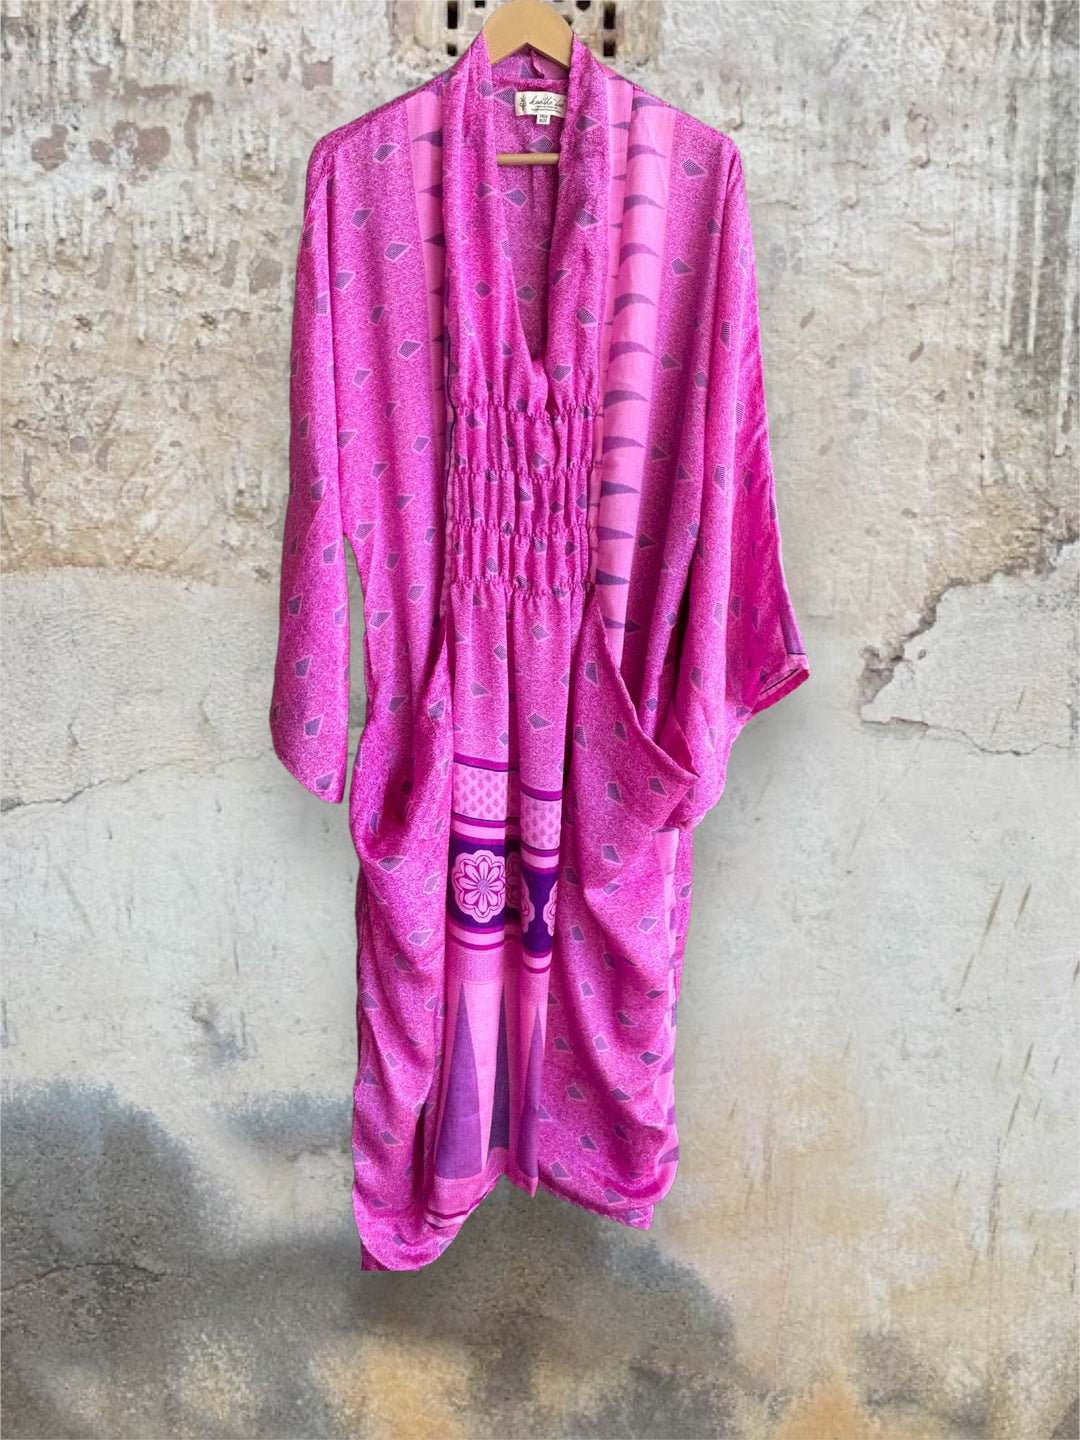 Ruched Dress 0424 125 - Kantha Bae